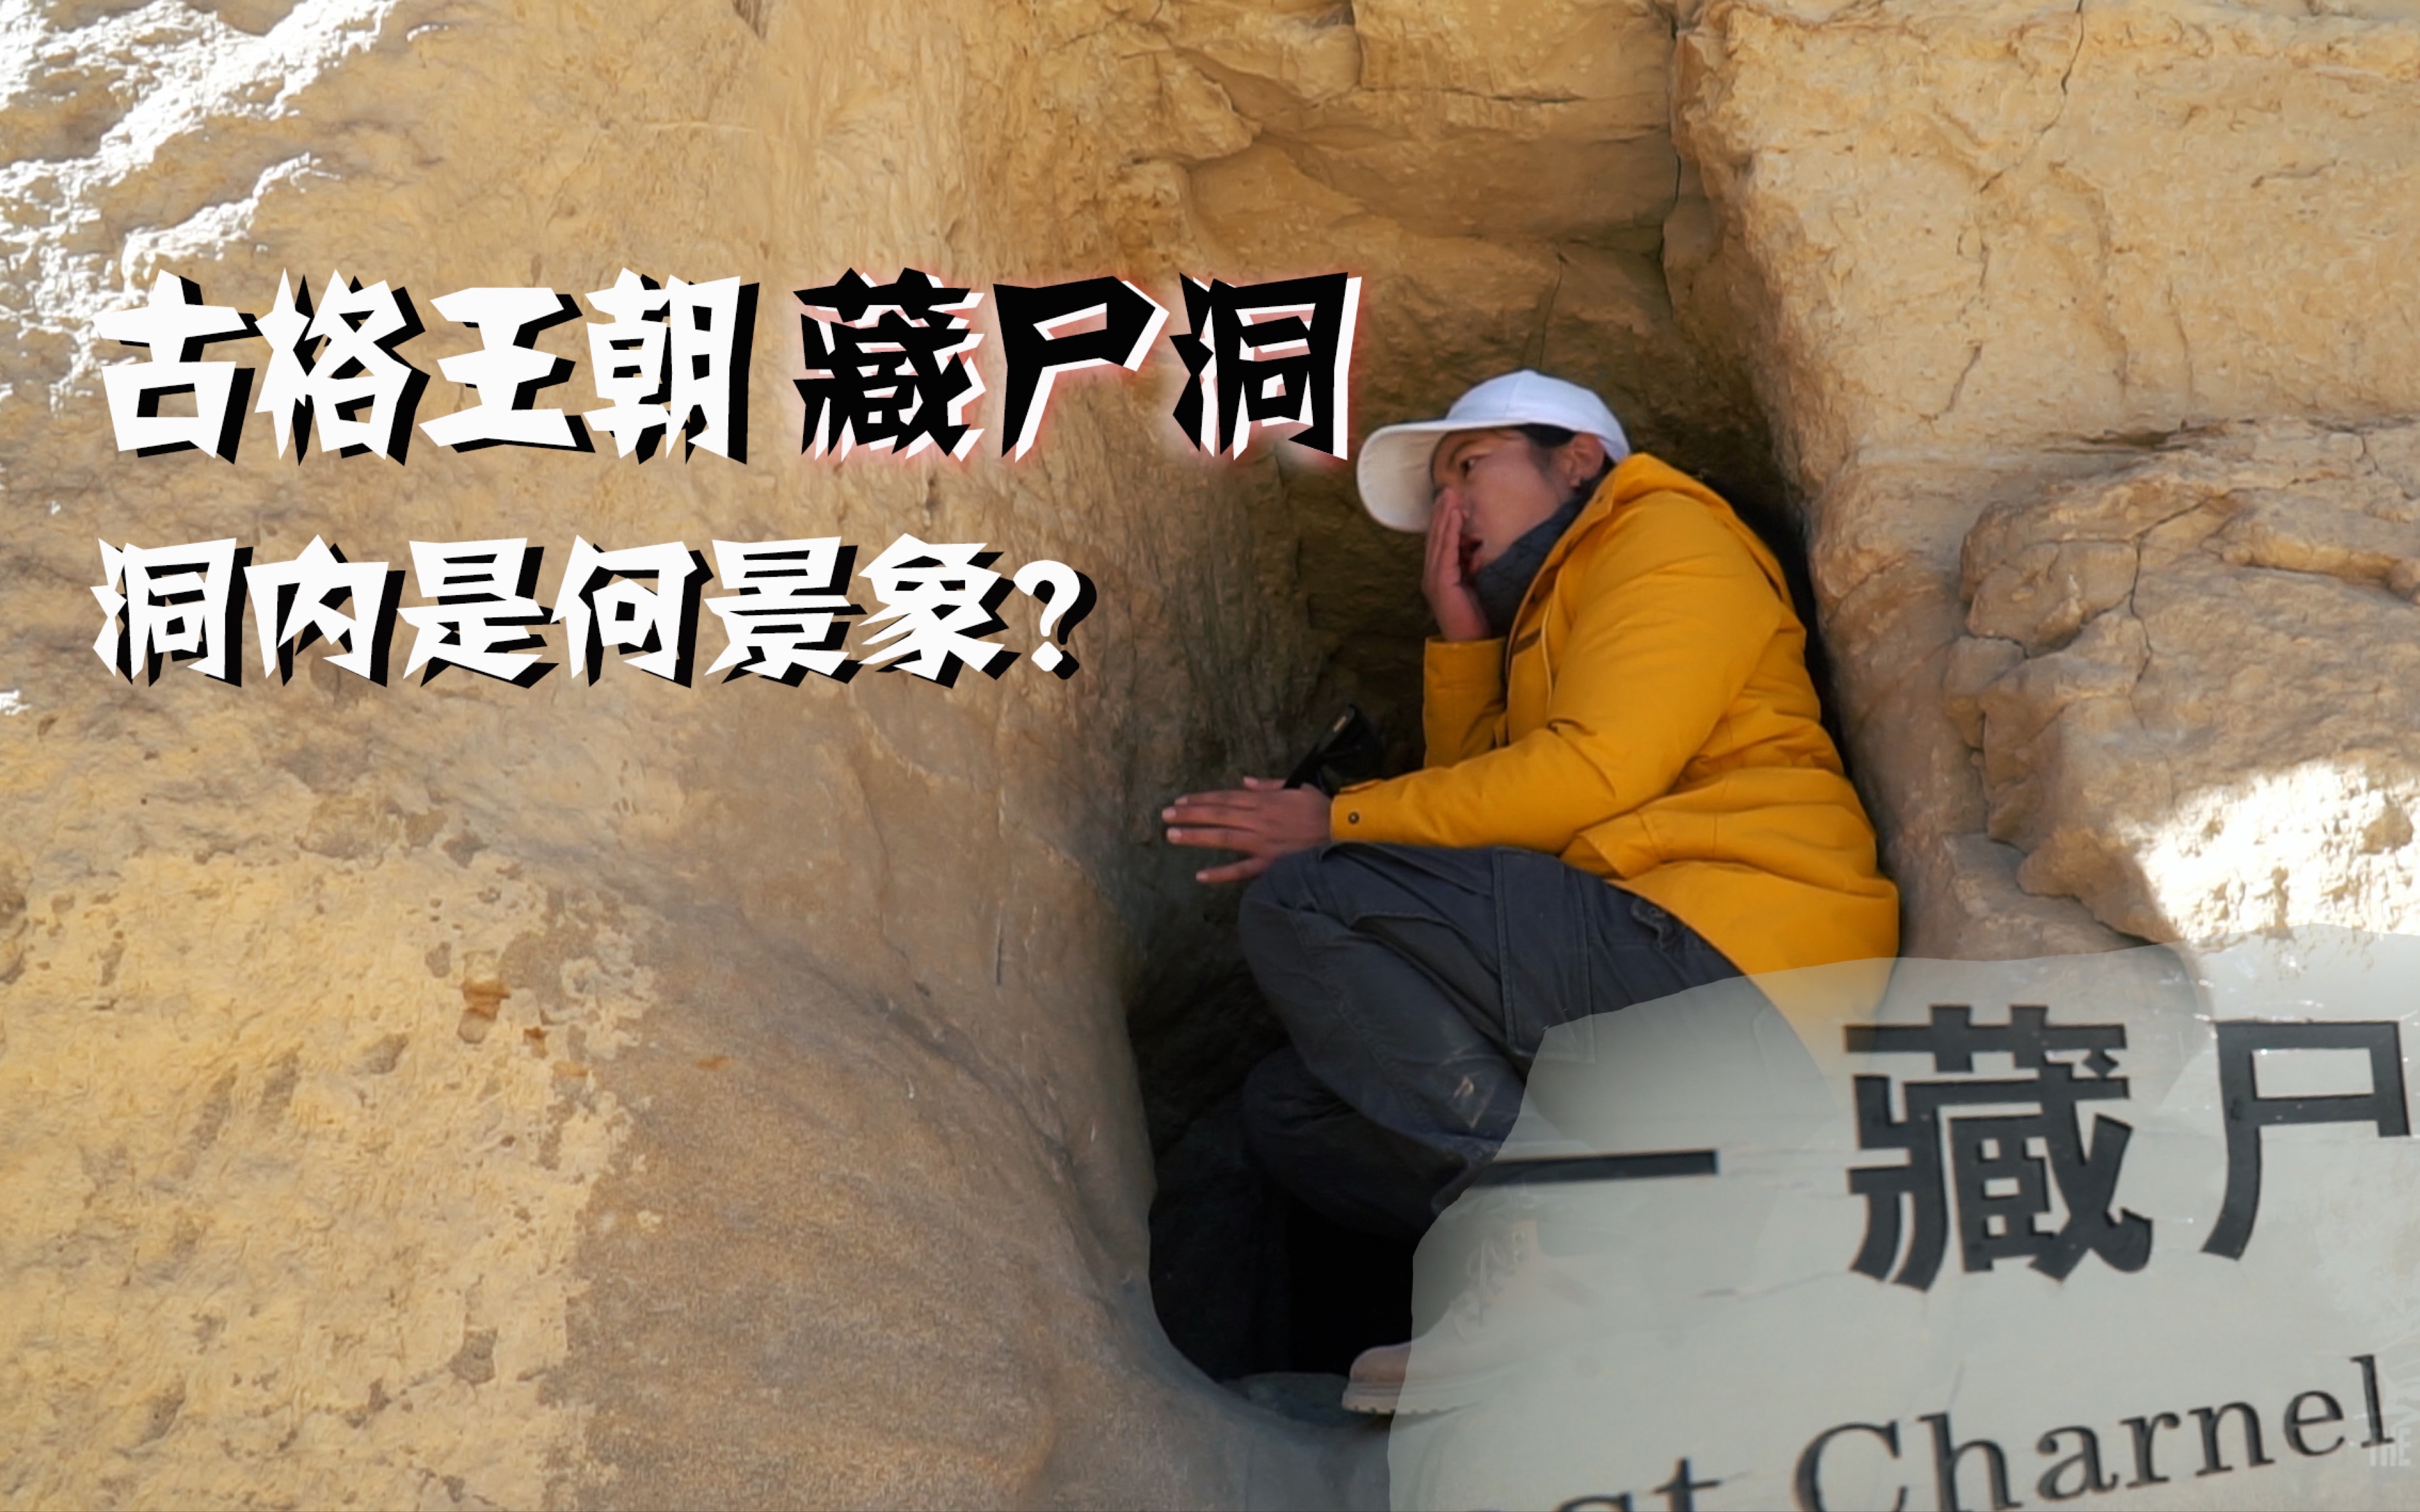 探秘西藏古格藏尸洞,不禁干呕,洞内是何景象?